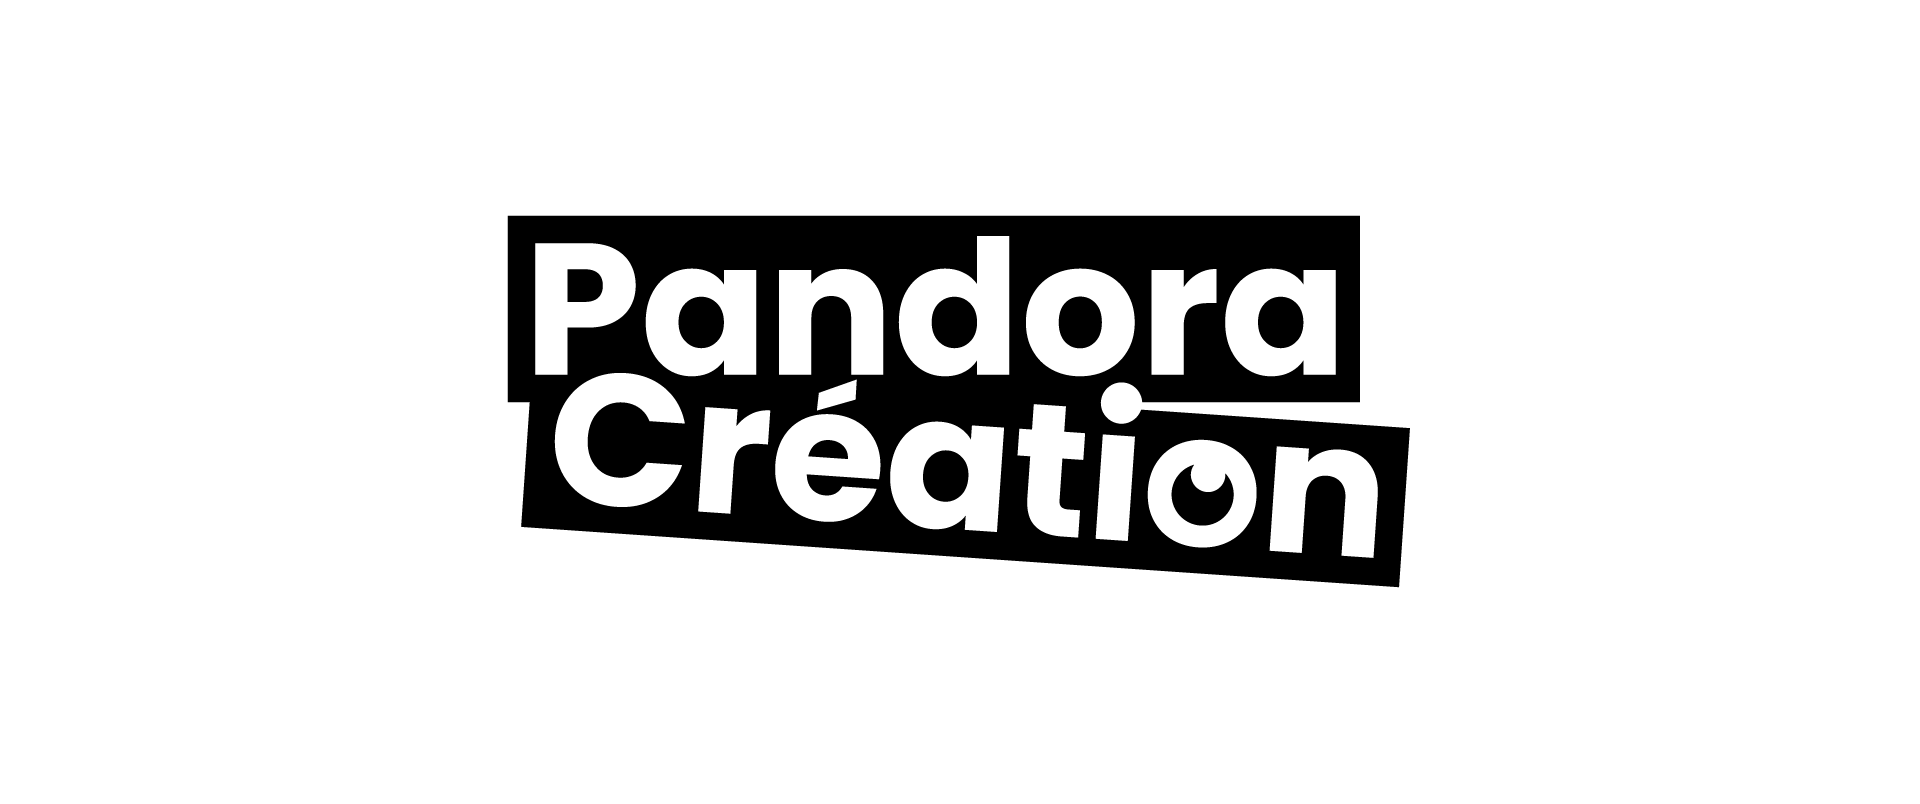 Pandora Création – production et création digitale